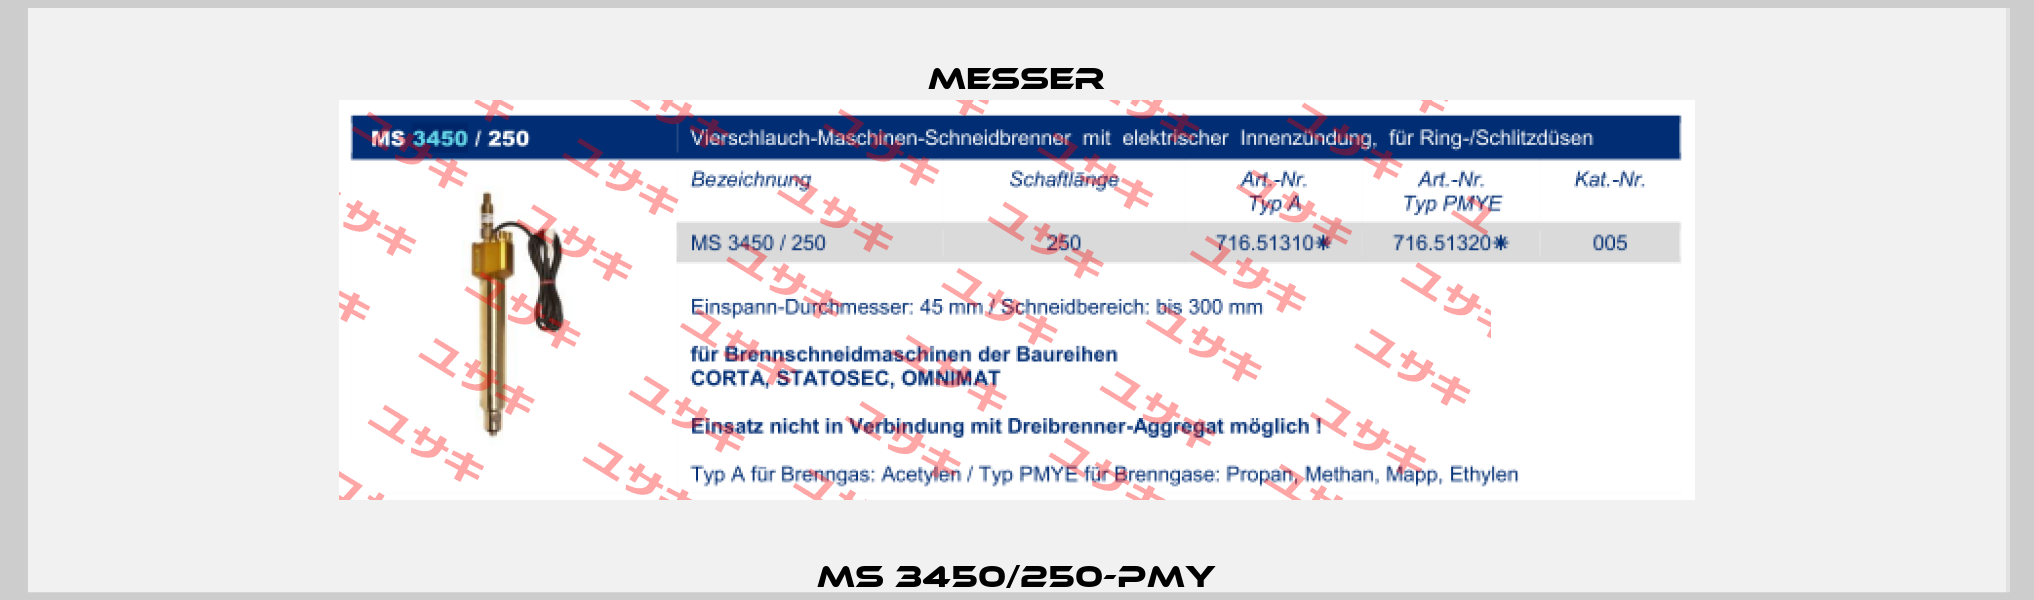 MS 3450/250-PMY Messer